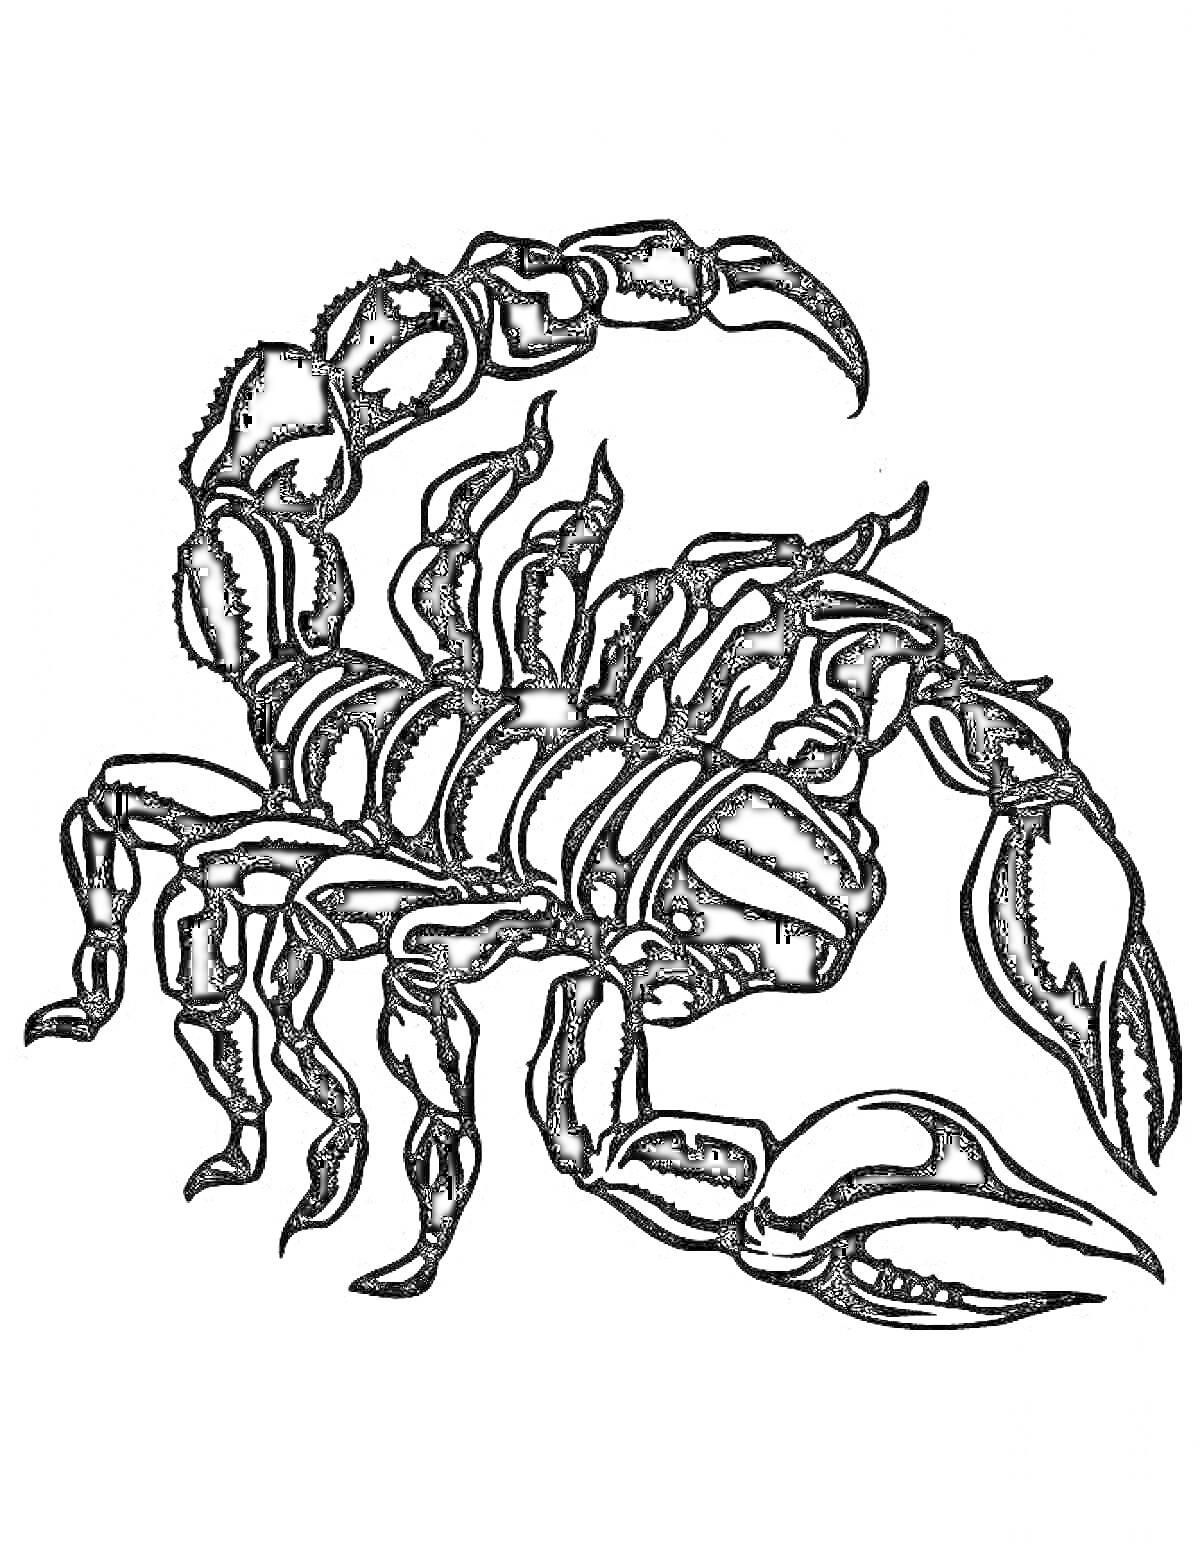 Раскраска Черно-белая раскраска с изображением скорпиона, с поднятым хвостом, клишнями и деталями тела